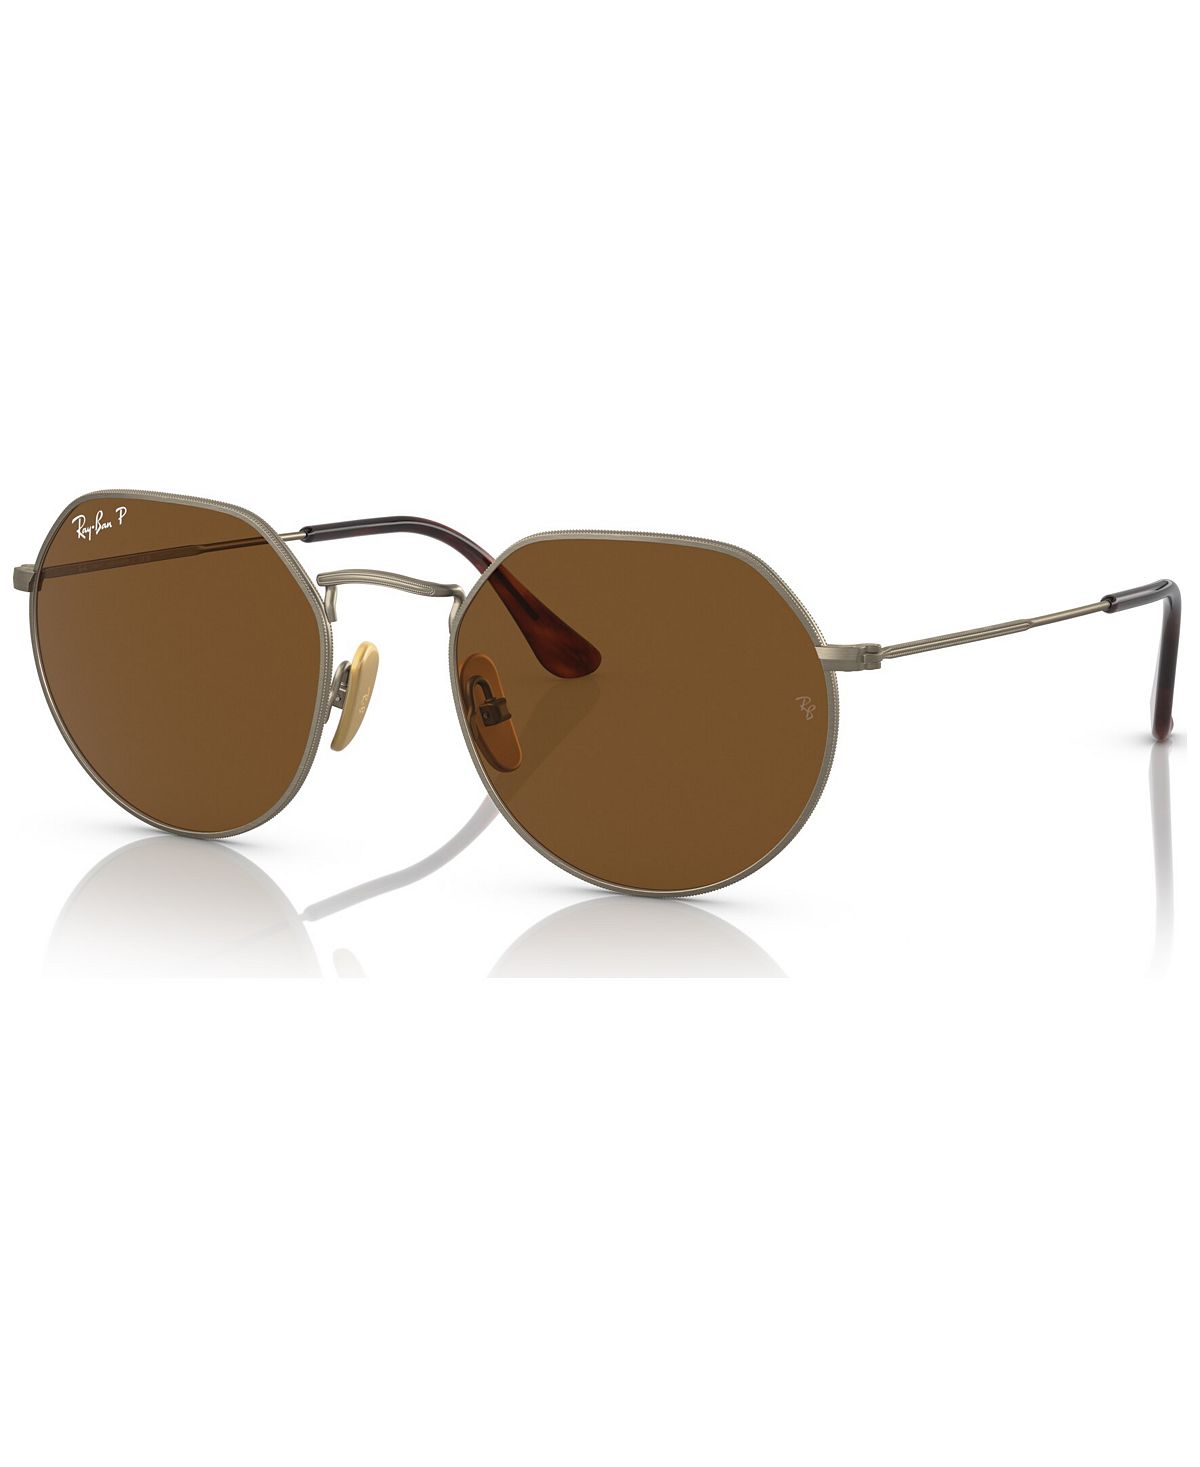 Поляризованные солнцезащитные очки унисекс, RB816551-P Ray-Ban